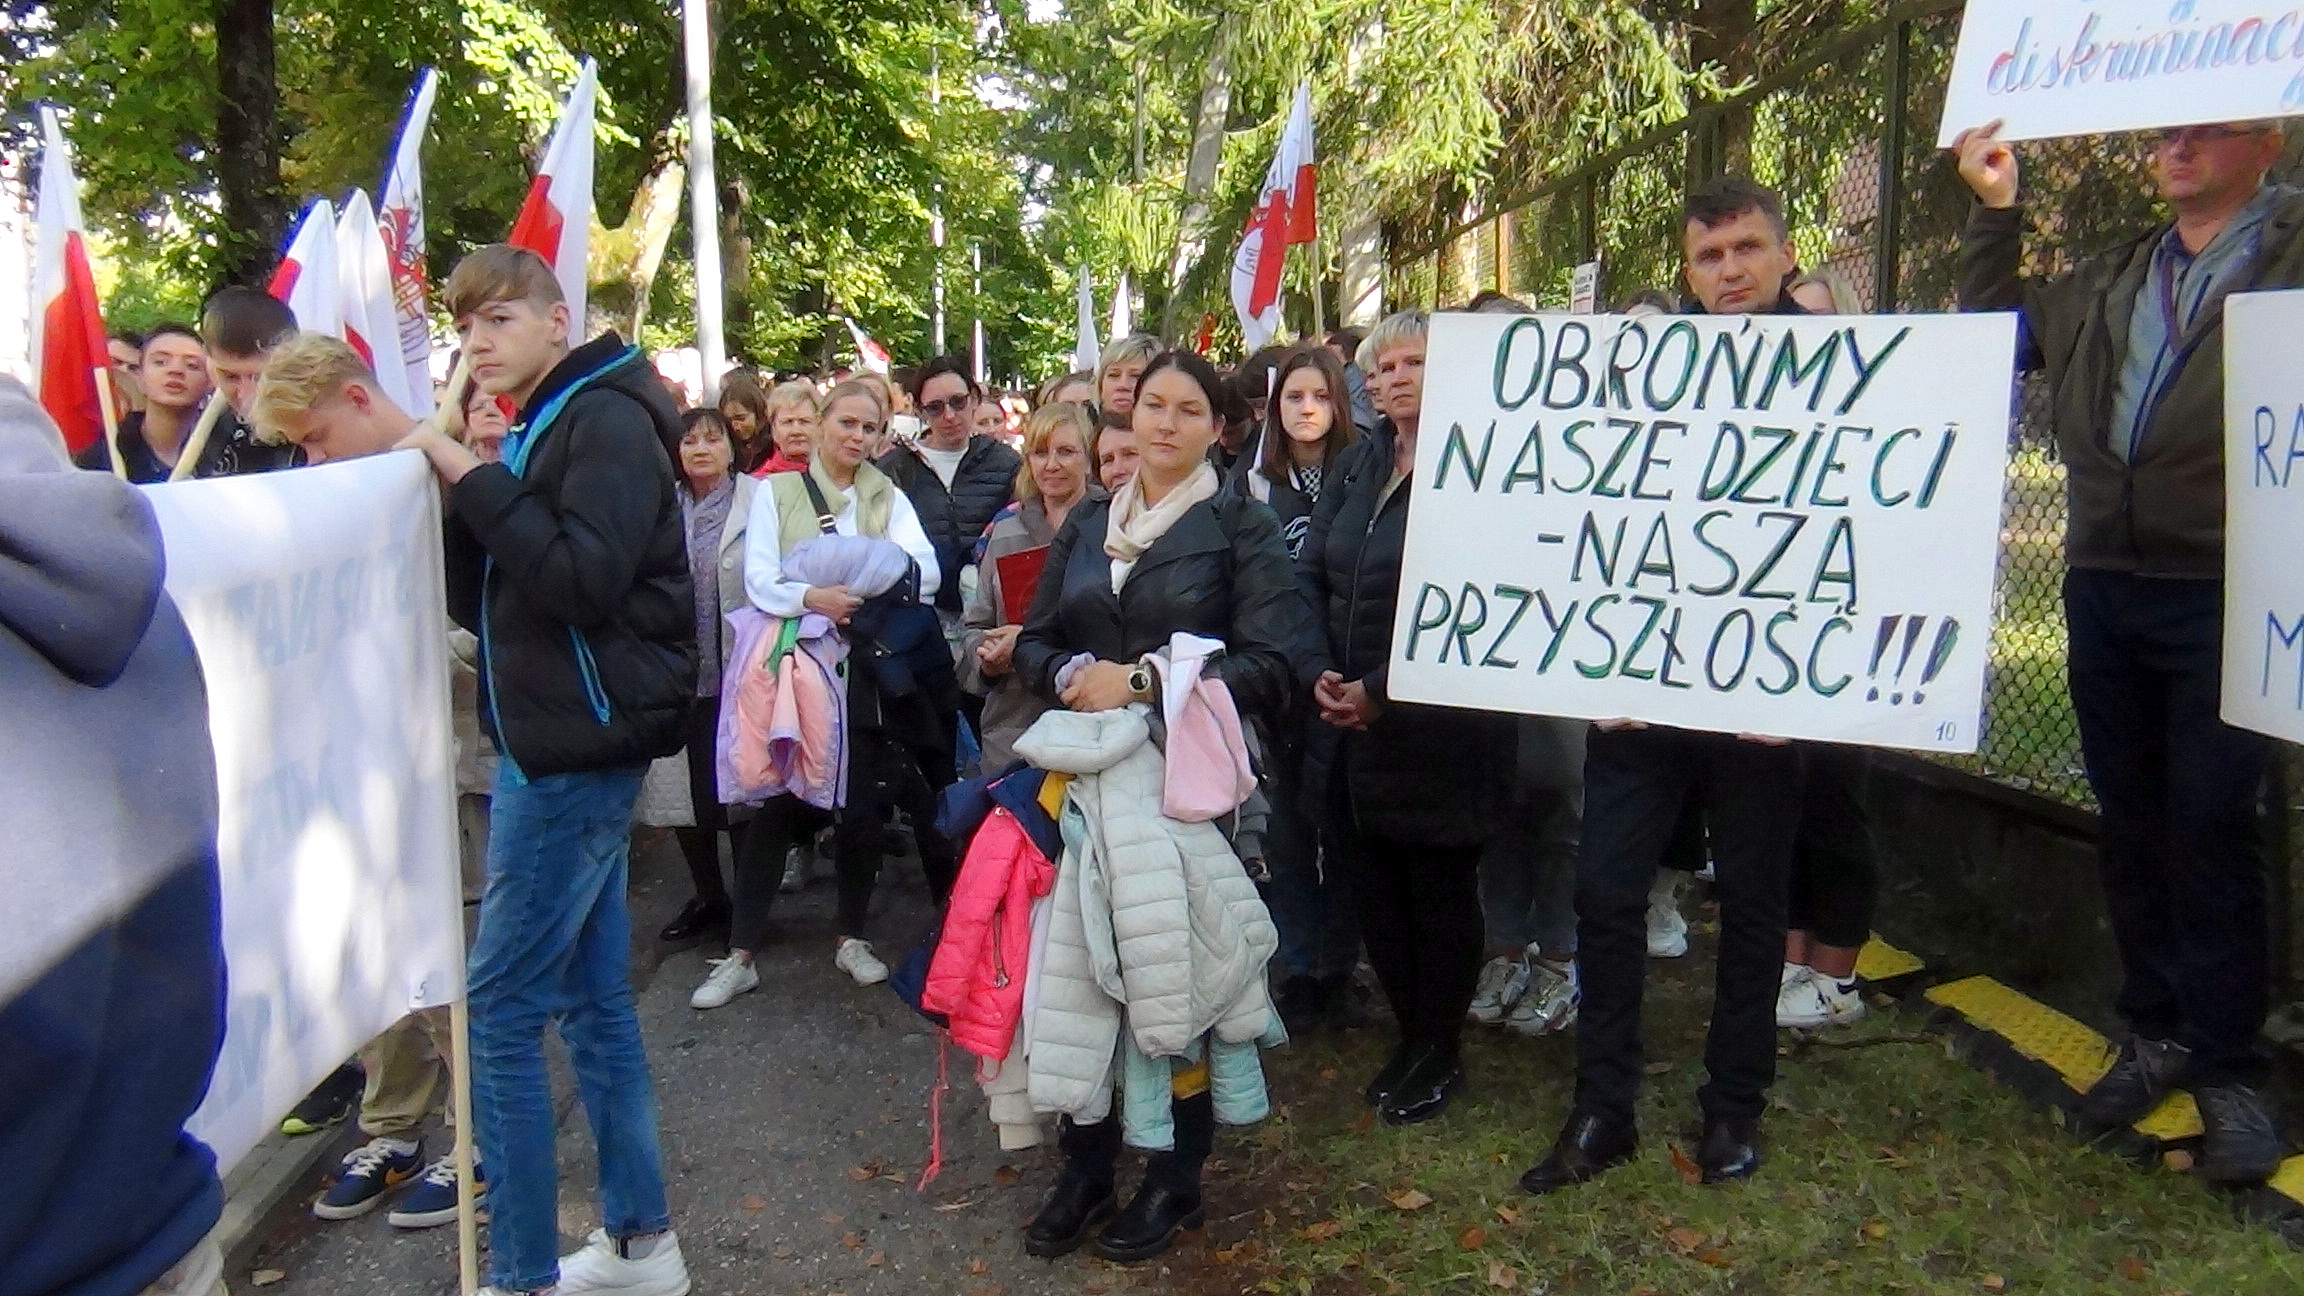 Защита прав национальных меньшинств только федеральный. Польская диаспора. В Рыбинске.